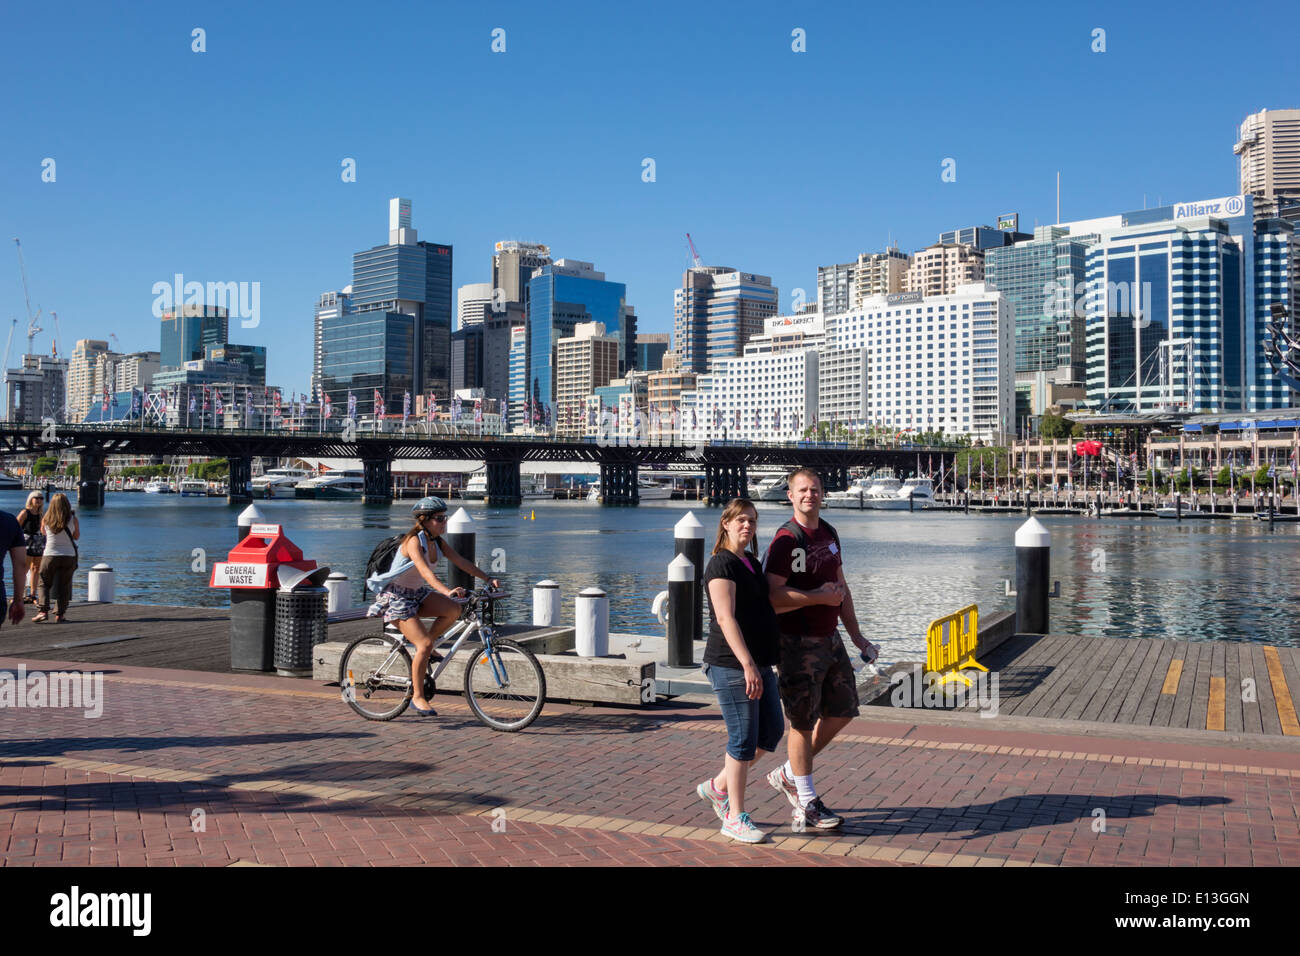 Sydney Australie, Darling Harbour, port, Cockle Bay Promenade, eau, gratte-ciel, horizon de la ville, homme hommes, femme femmes, couple, marche, vélo, ridi Banque D'Images